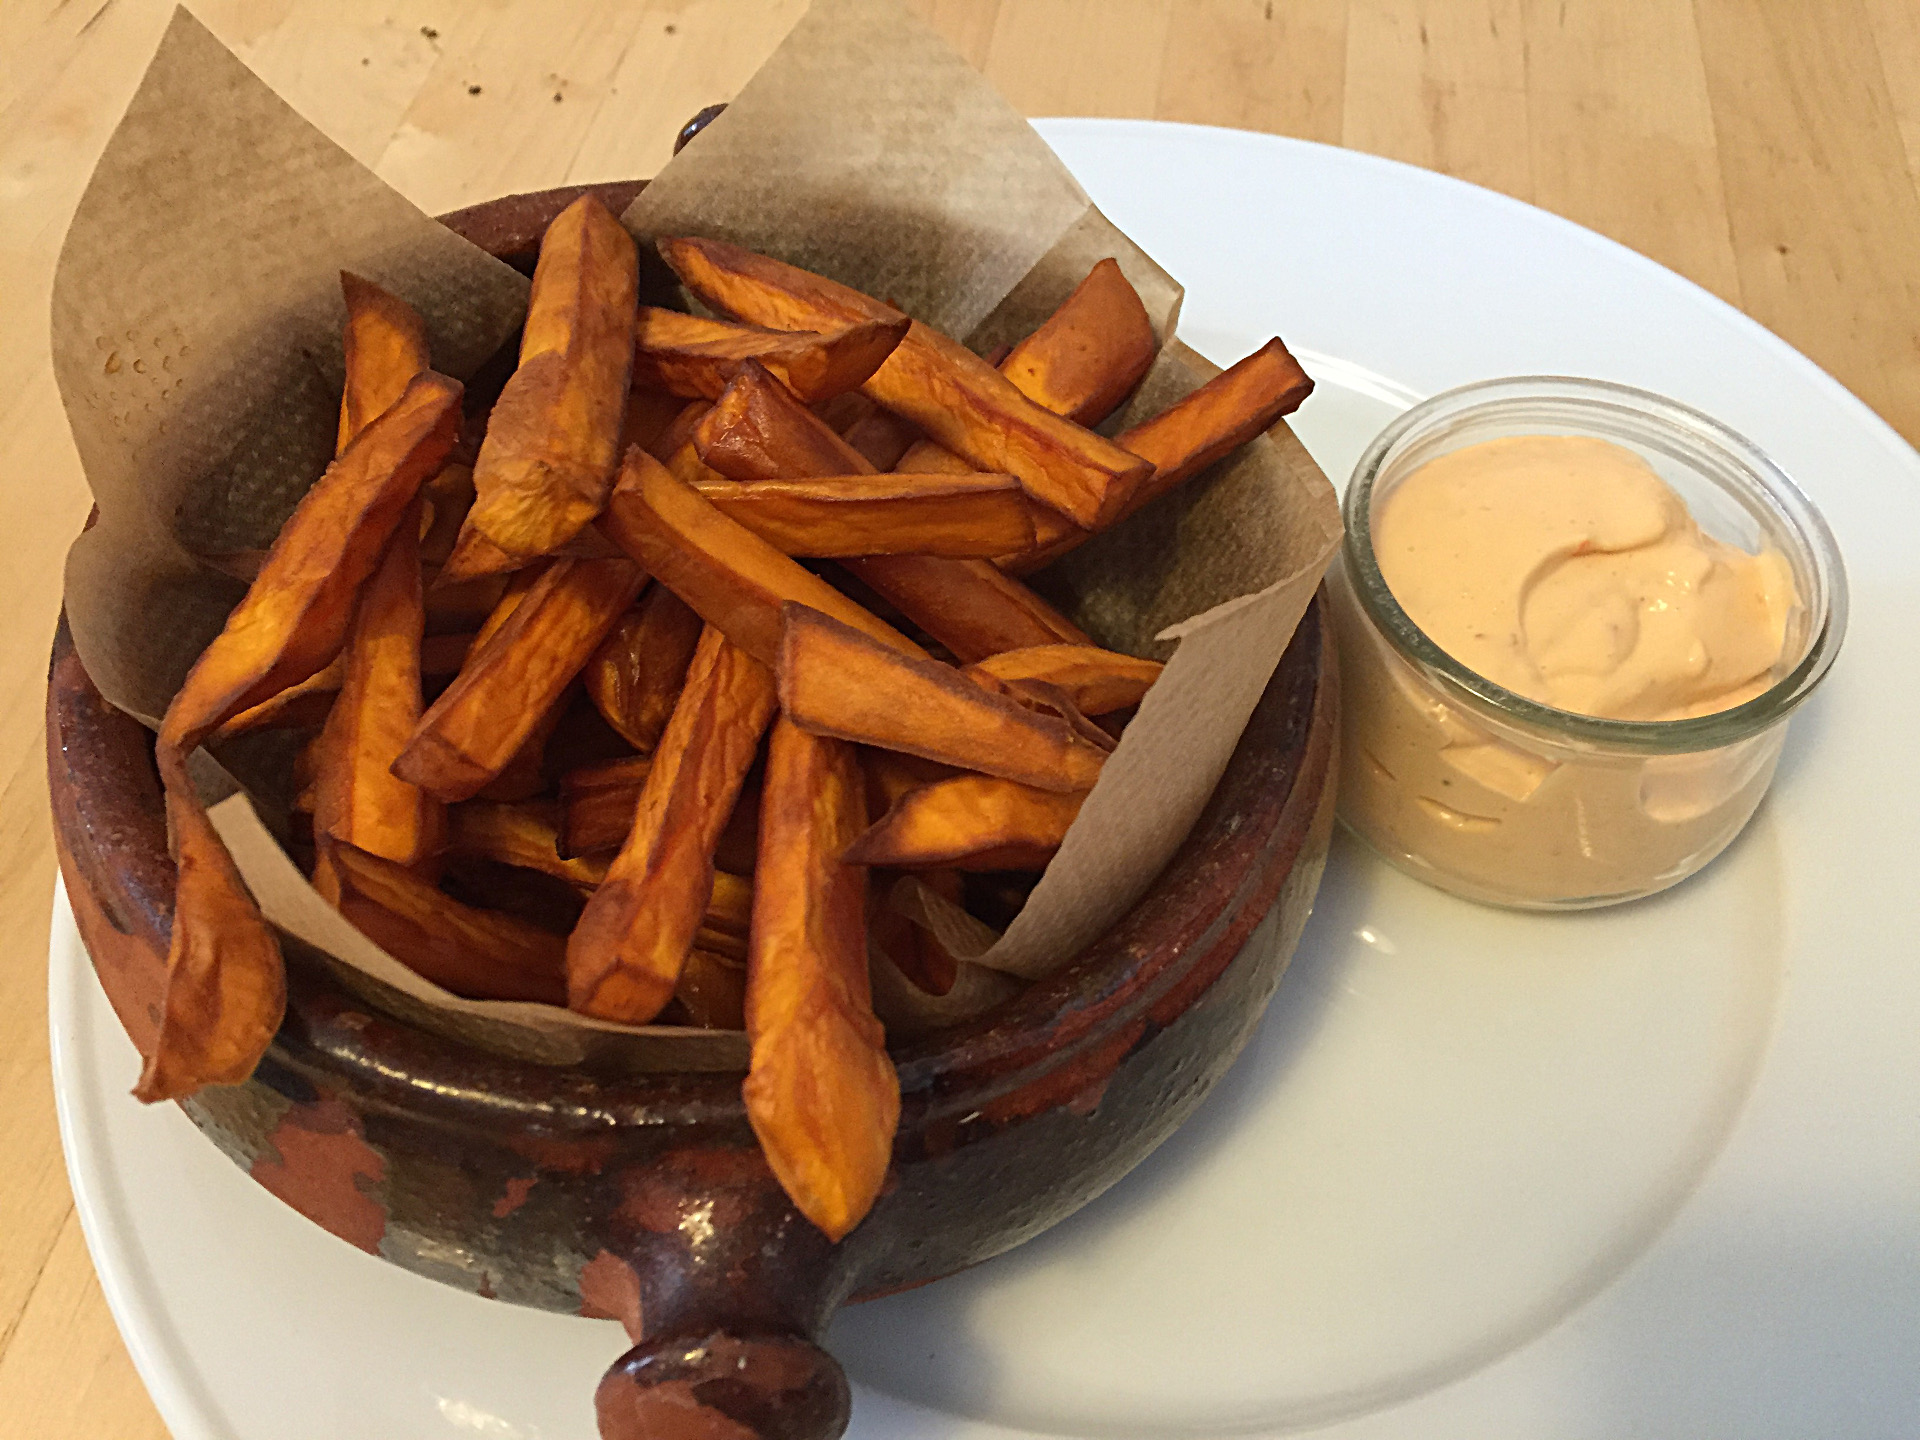 Sweet potato fries with chili garlic mayonnaise